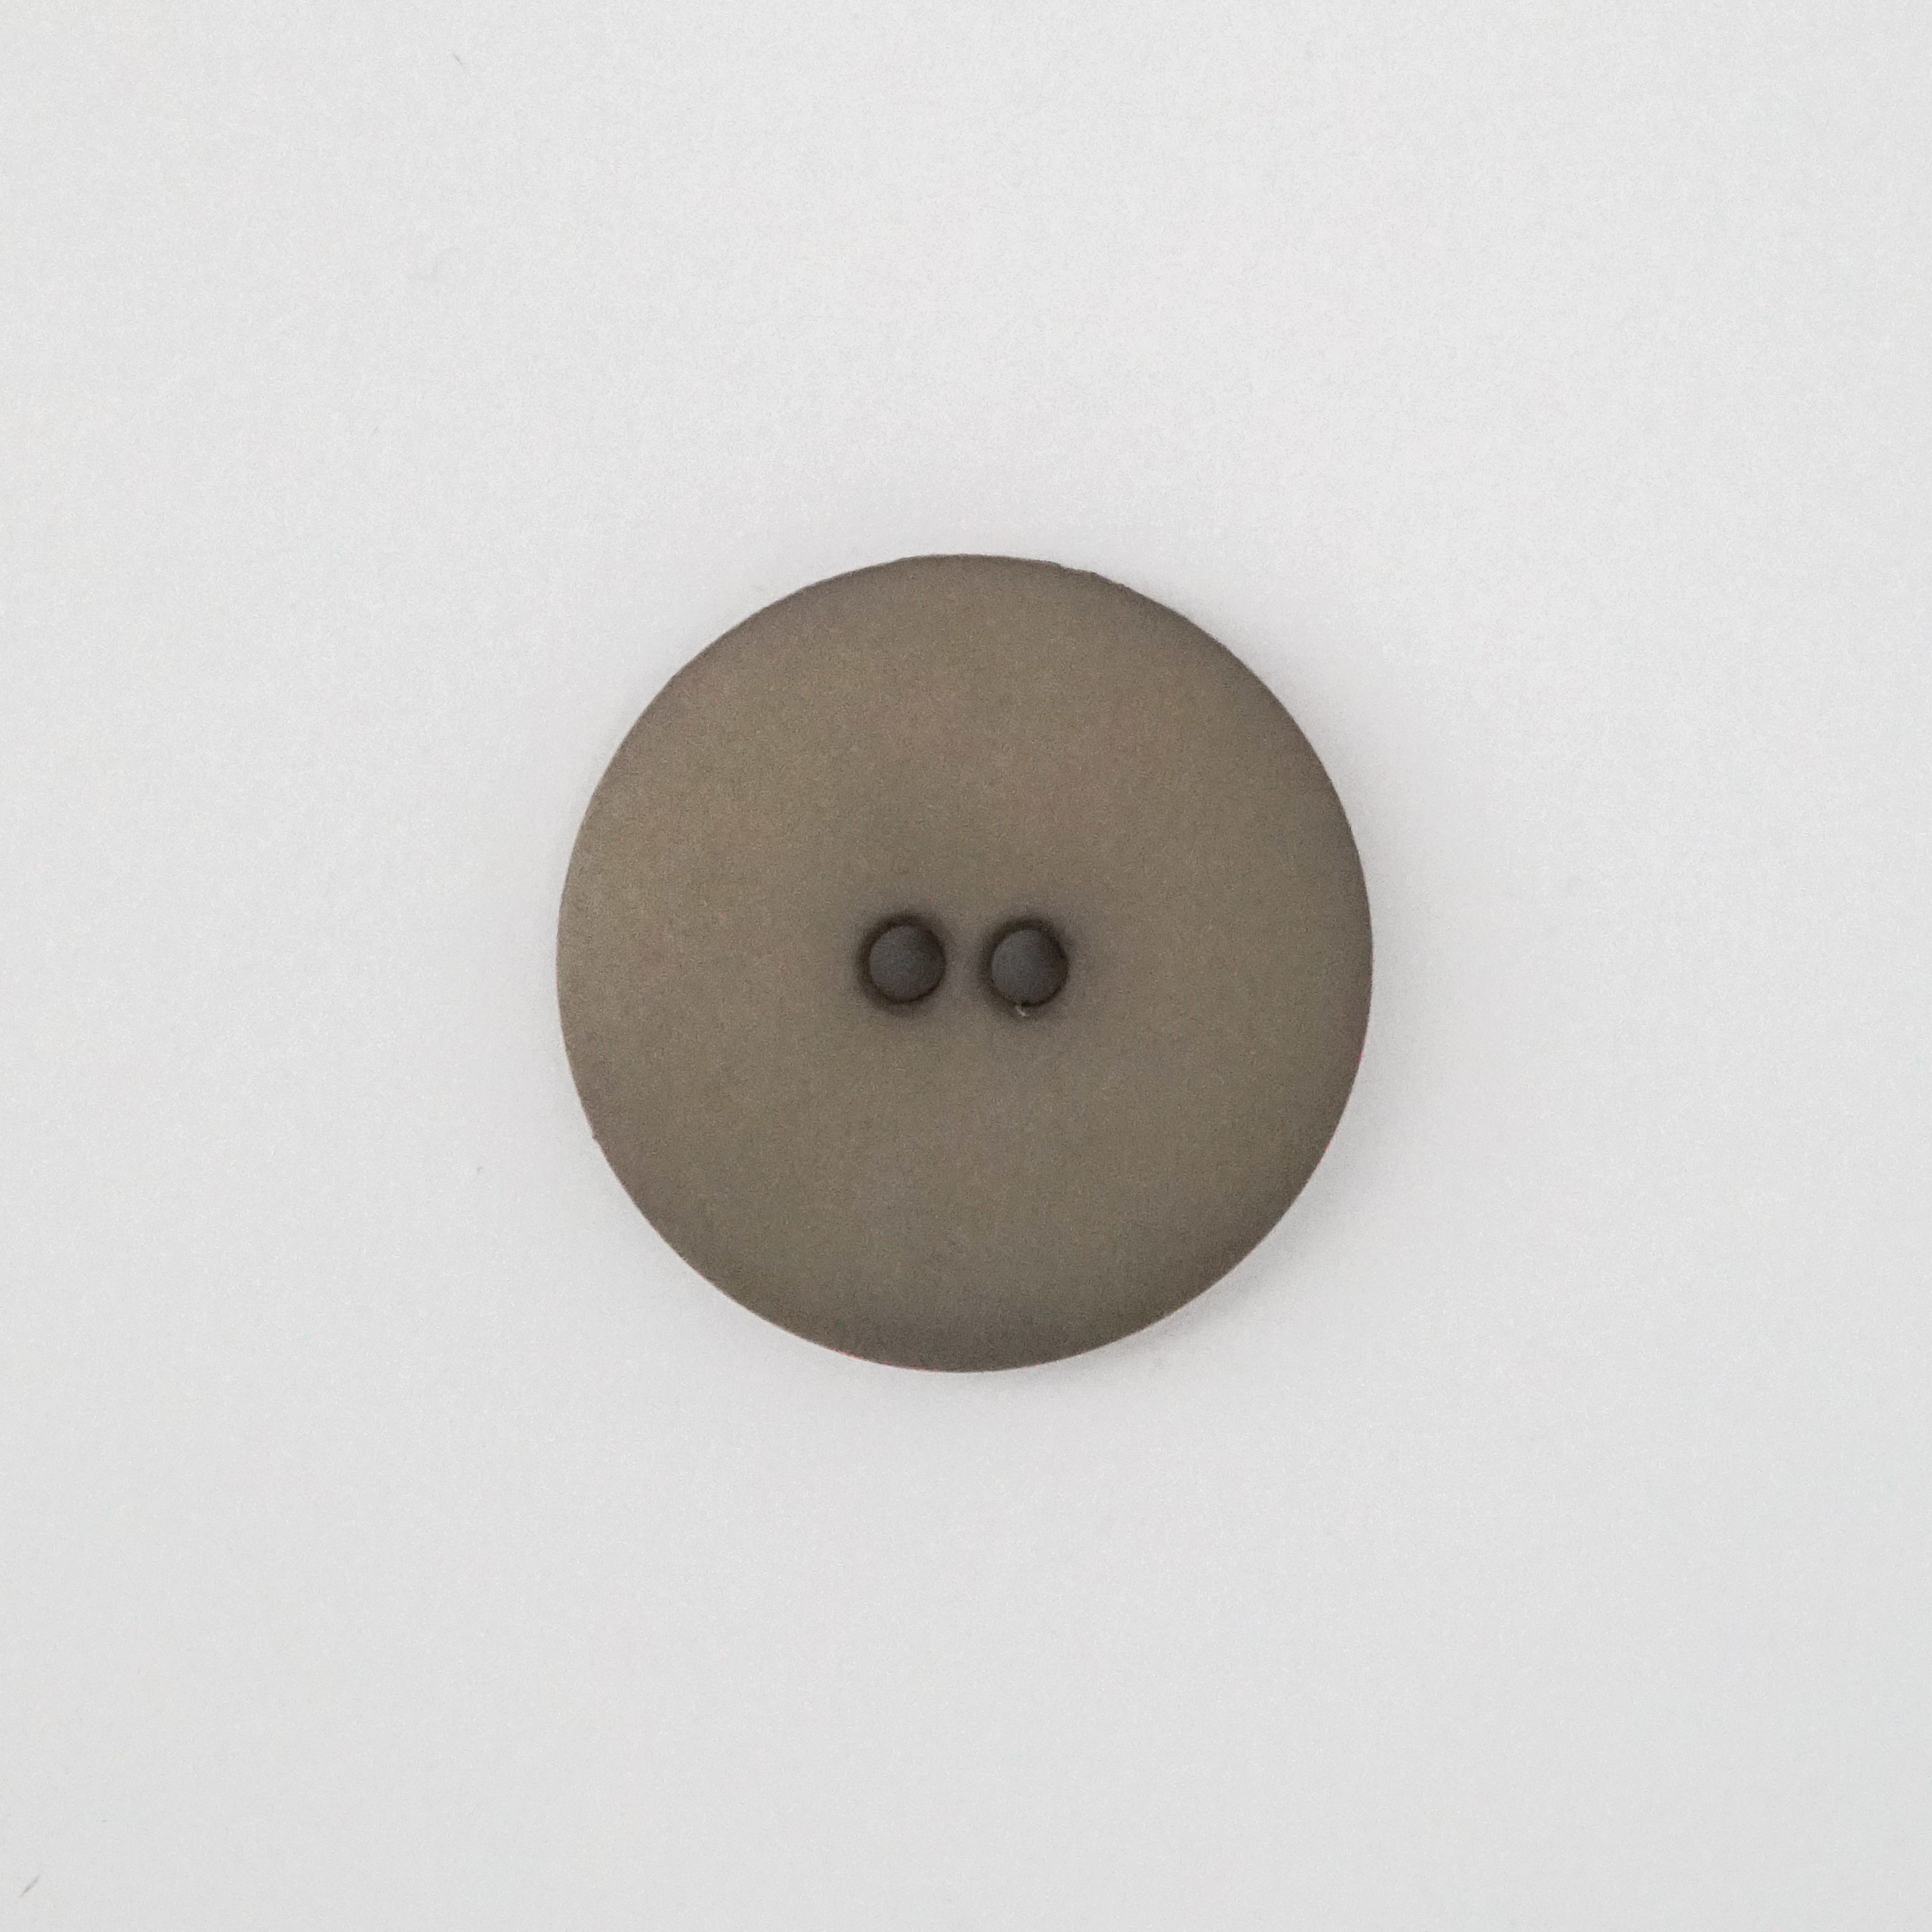  - Olive green plastic button | Matt | Round plastic button - by HipKnitShop - 29/10/2018